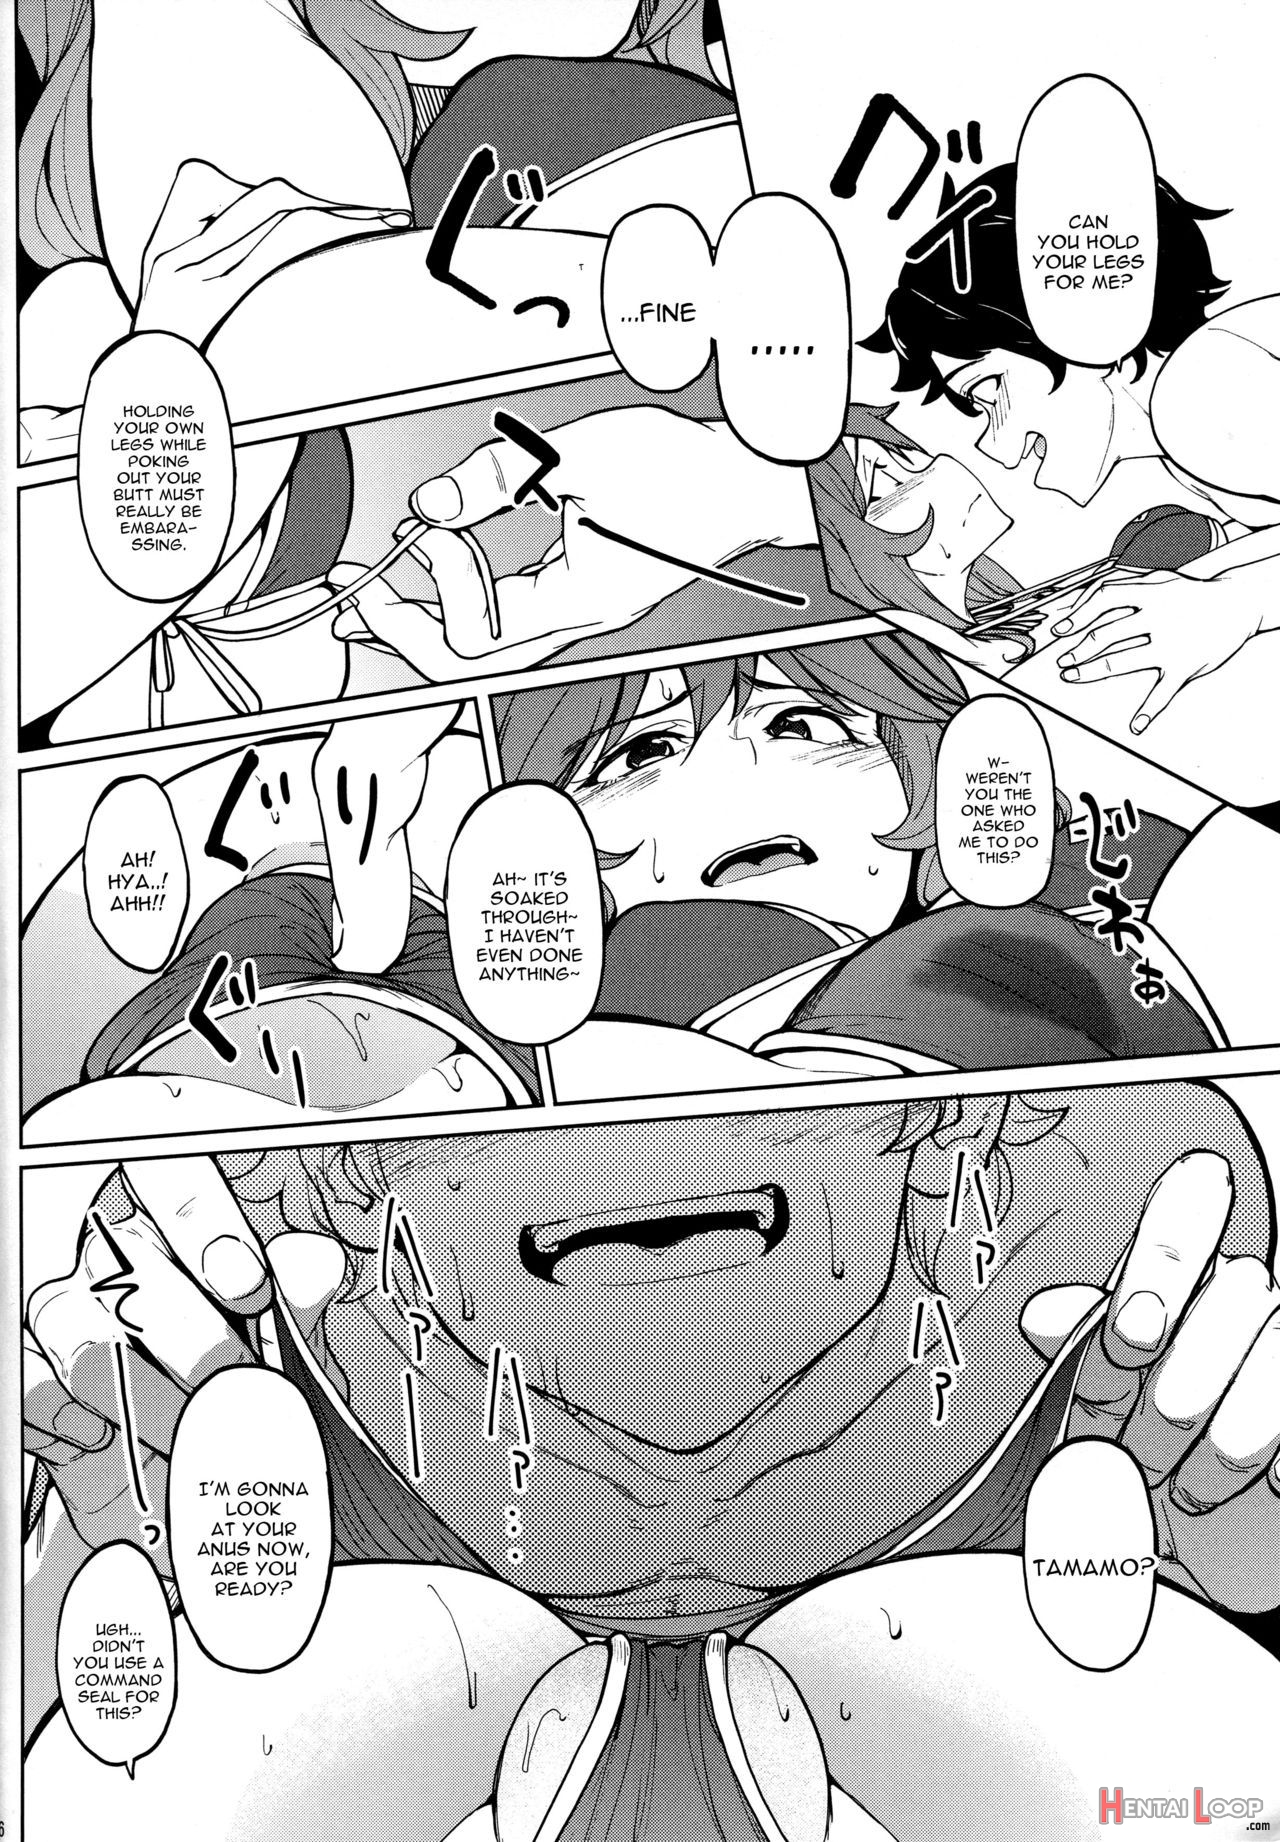 Tamamo No Ushiro page 5